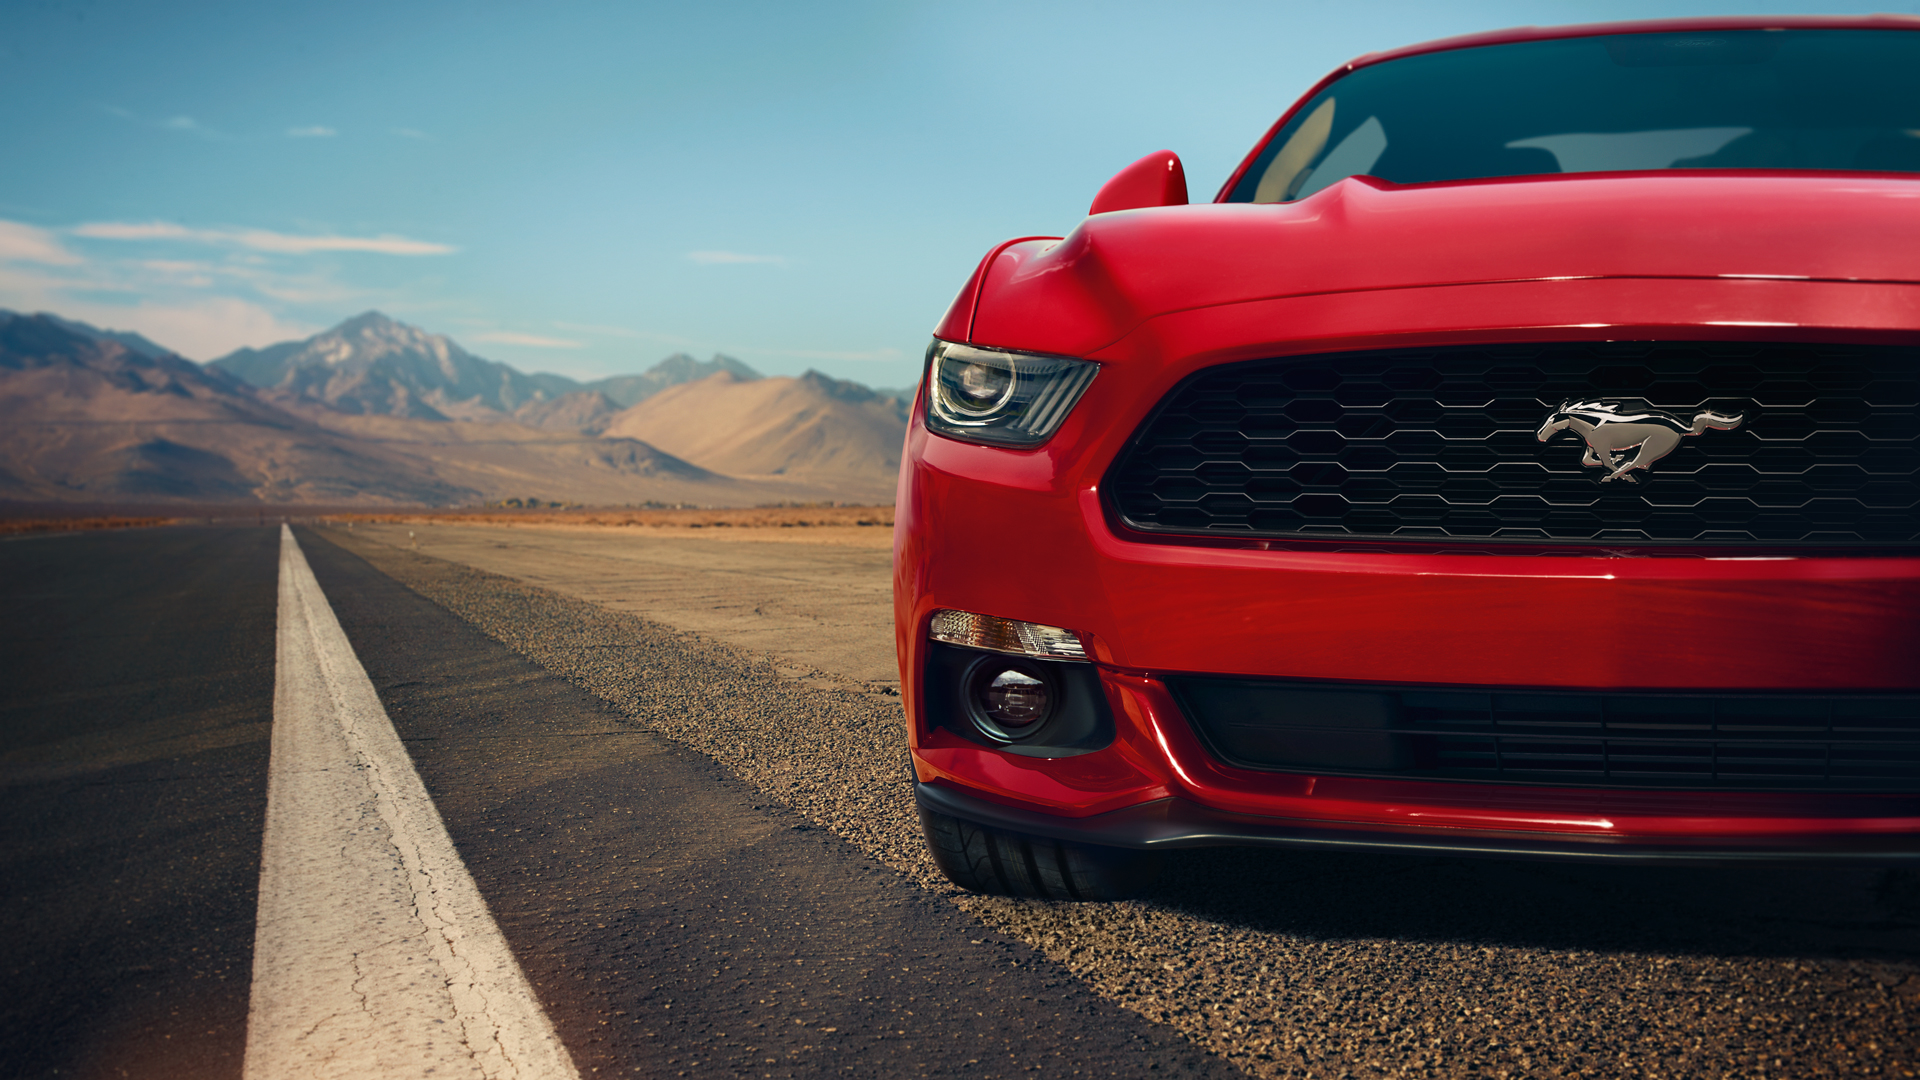 Meilleurs fonds d'écran Ford Mustang Gt 2015 pour l'écran du téléphone